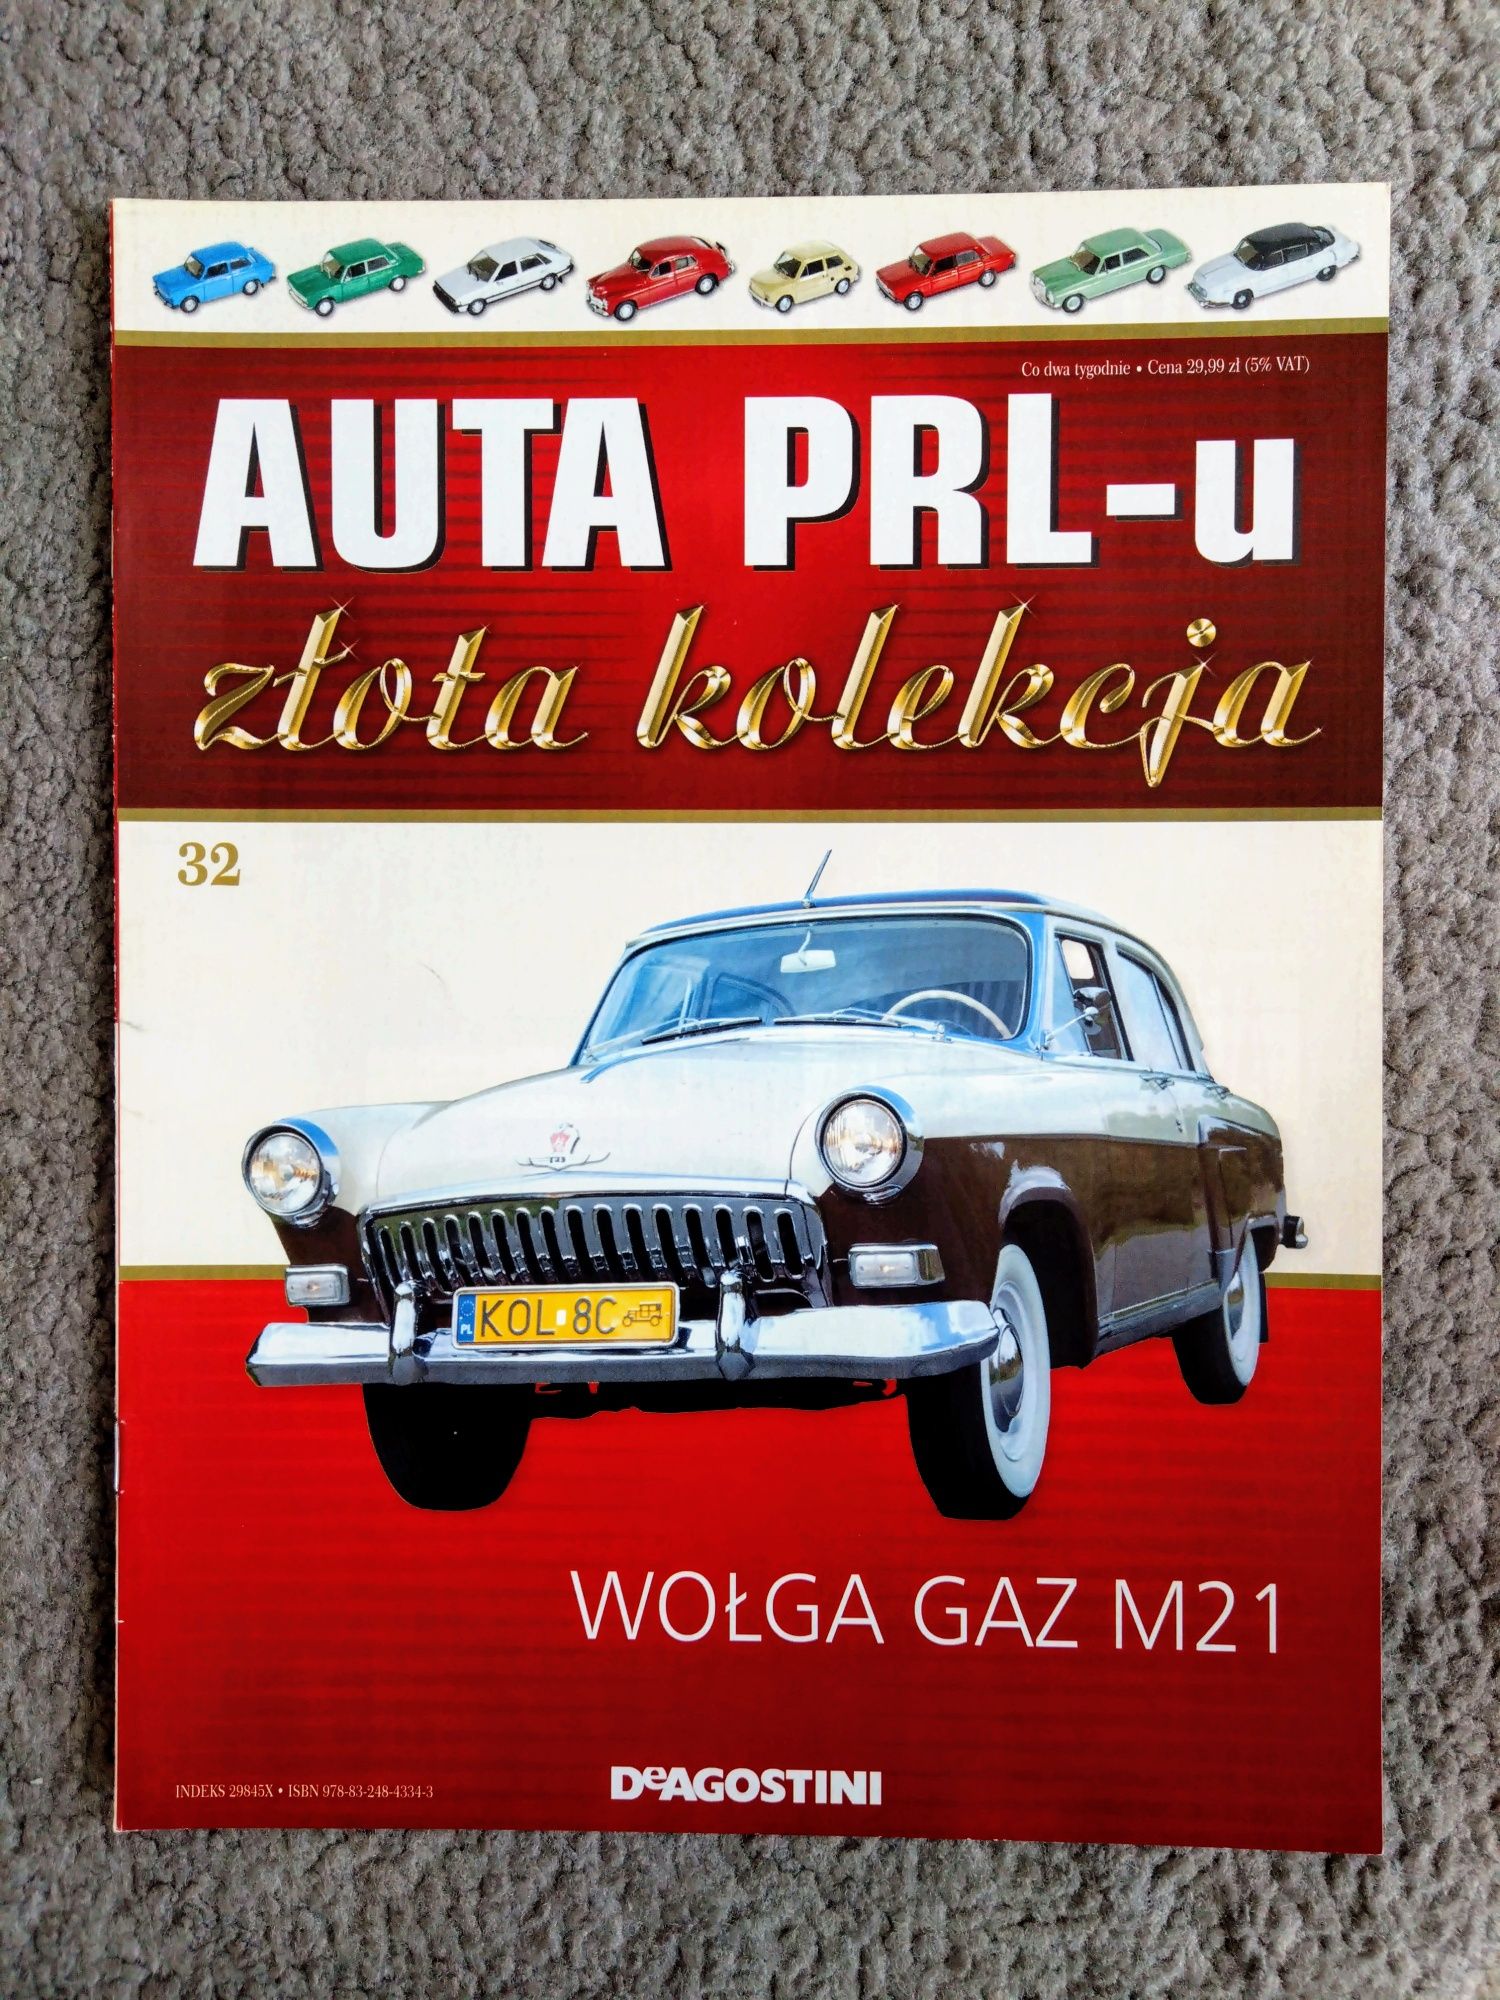 Kultowe Auta PRL Złota Kolekcja nr 32 - Wołga Gaz M21